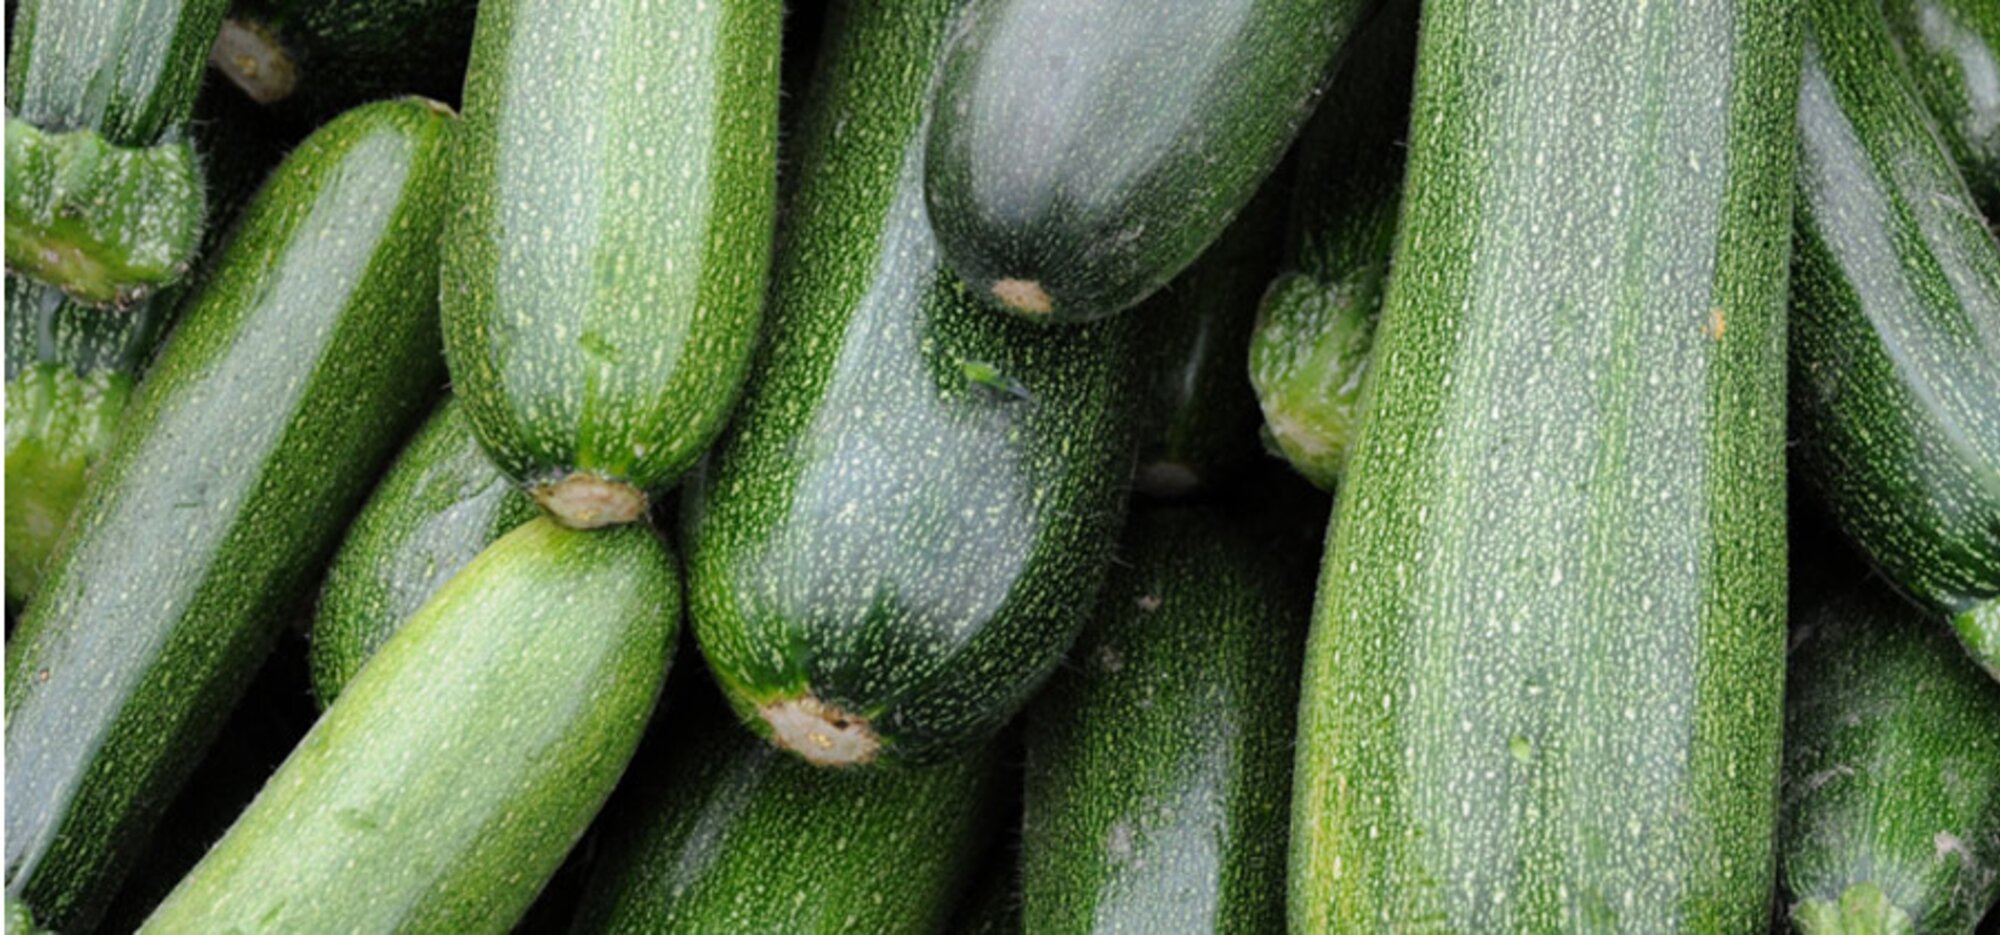 Gemüse-Lexikon: Zucchini